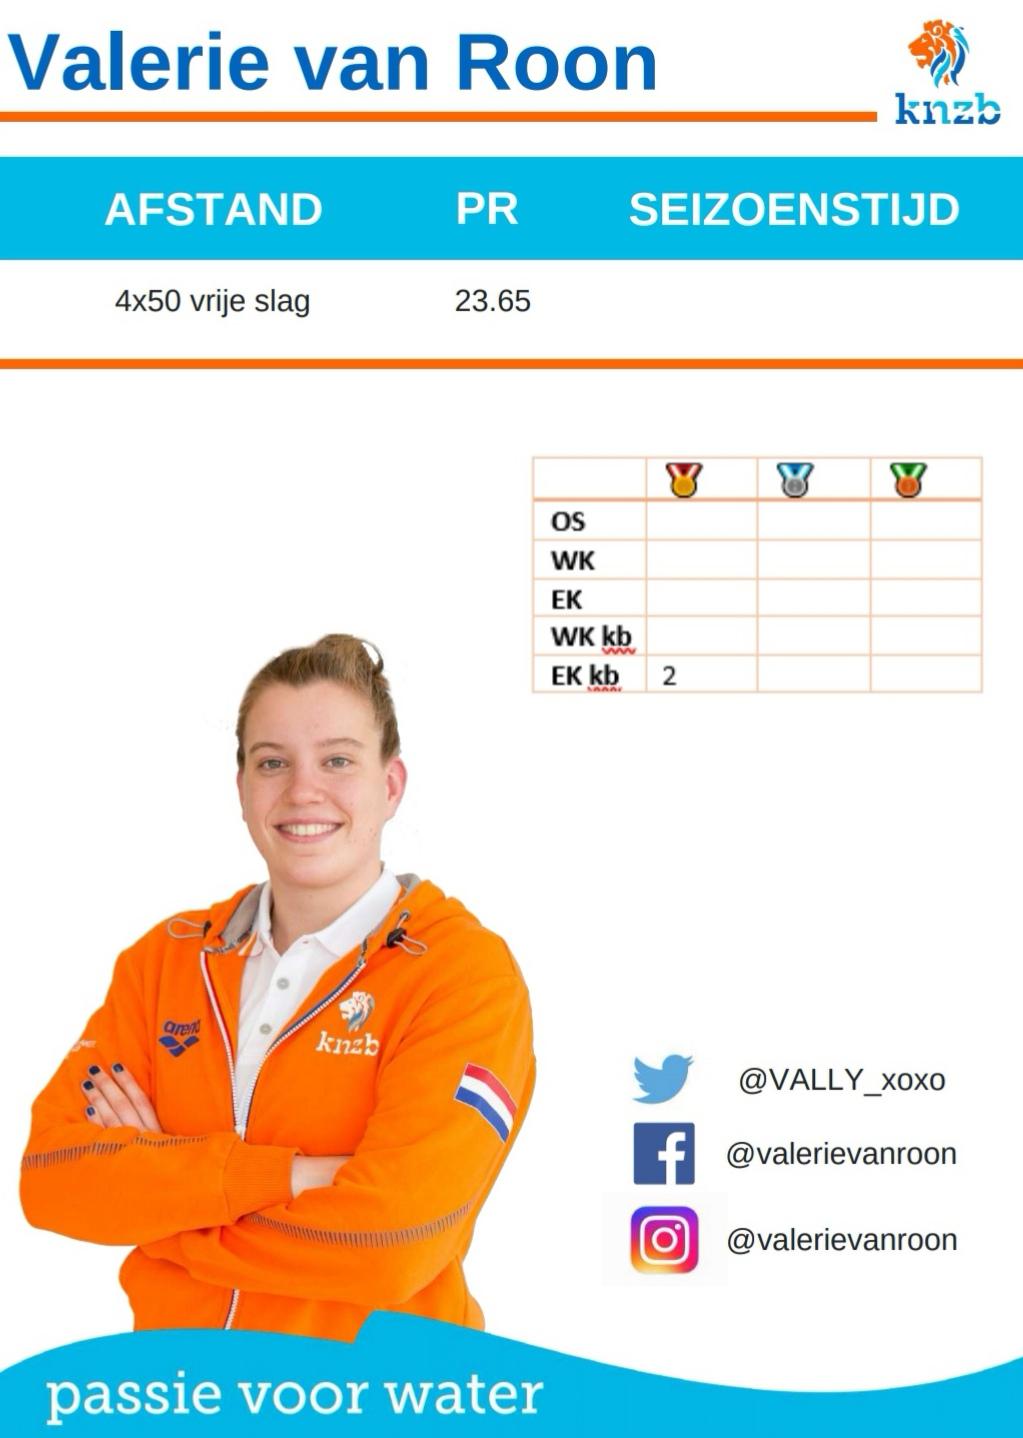 Valerie van Roon debuteert op WK korte baan